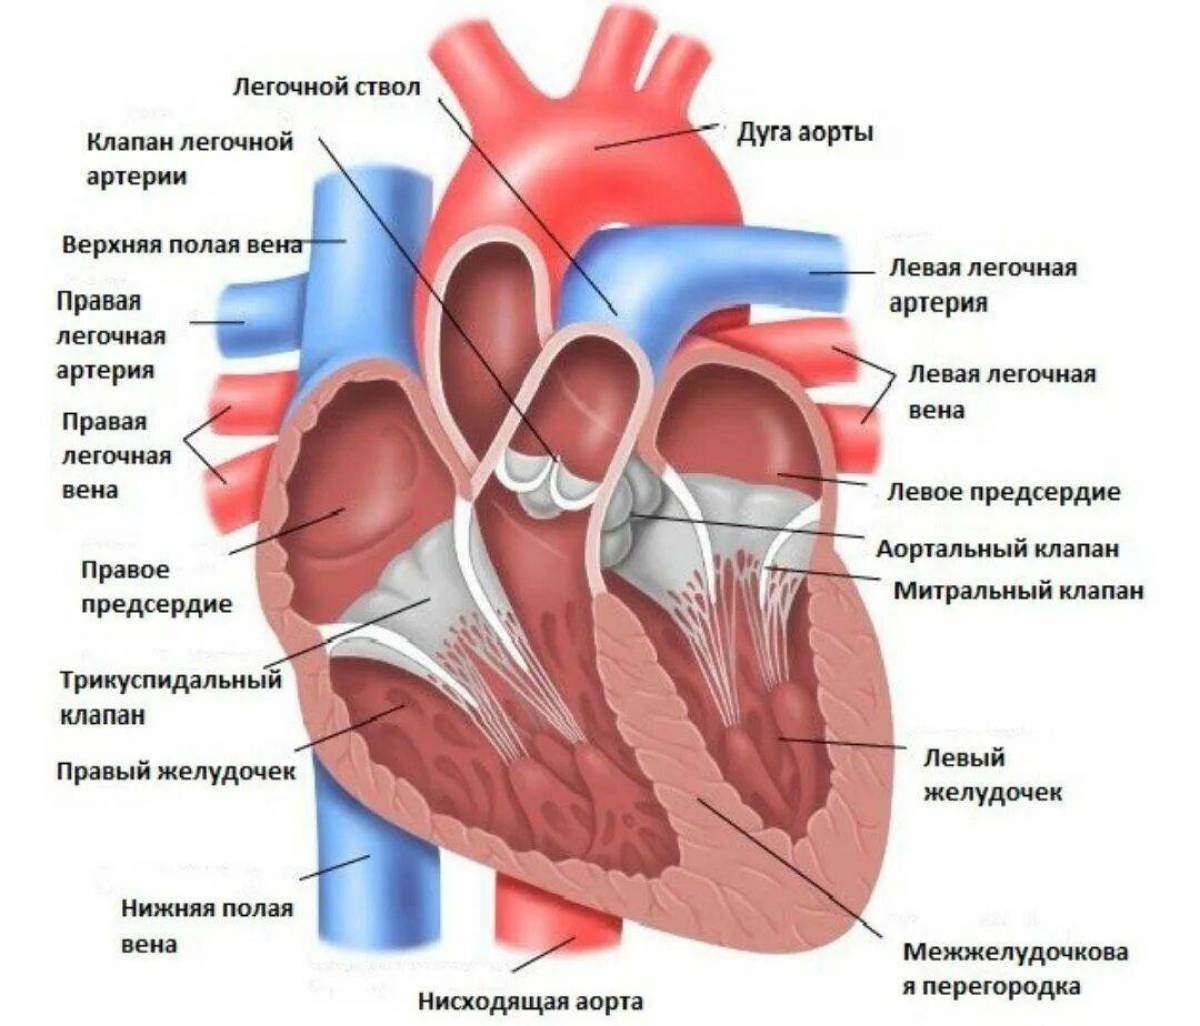 Отверстия в предсердиях. Строение сердца анатомия клапан аорты. Полулунный клапан легочного ствола. Отверстия аорты и легочного ствола. Строение левого желудочка сердца анатомия.